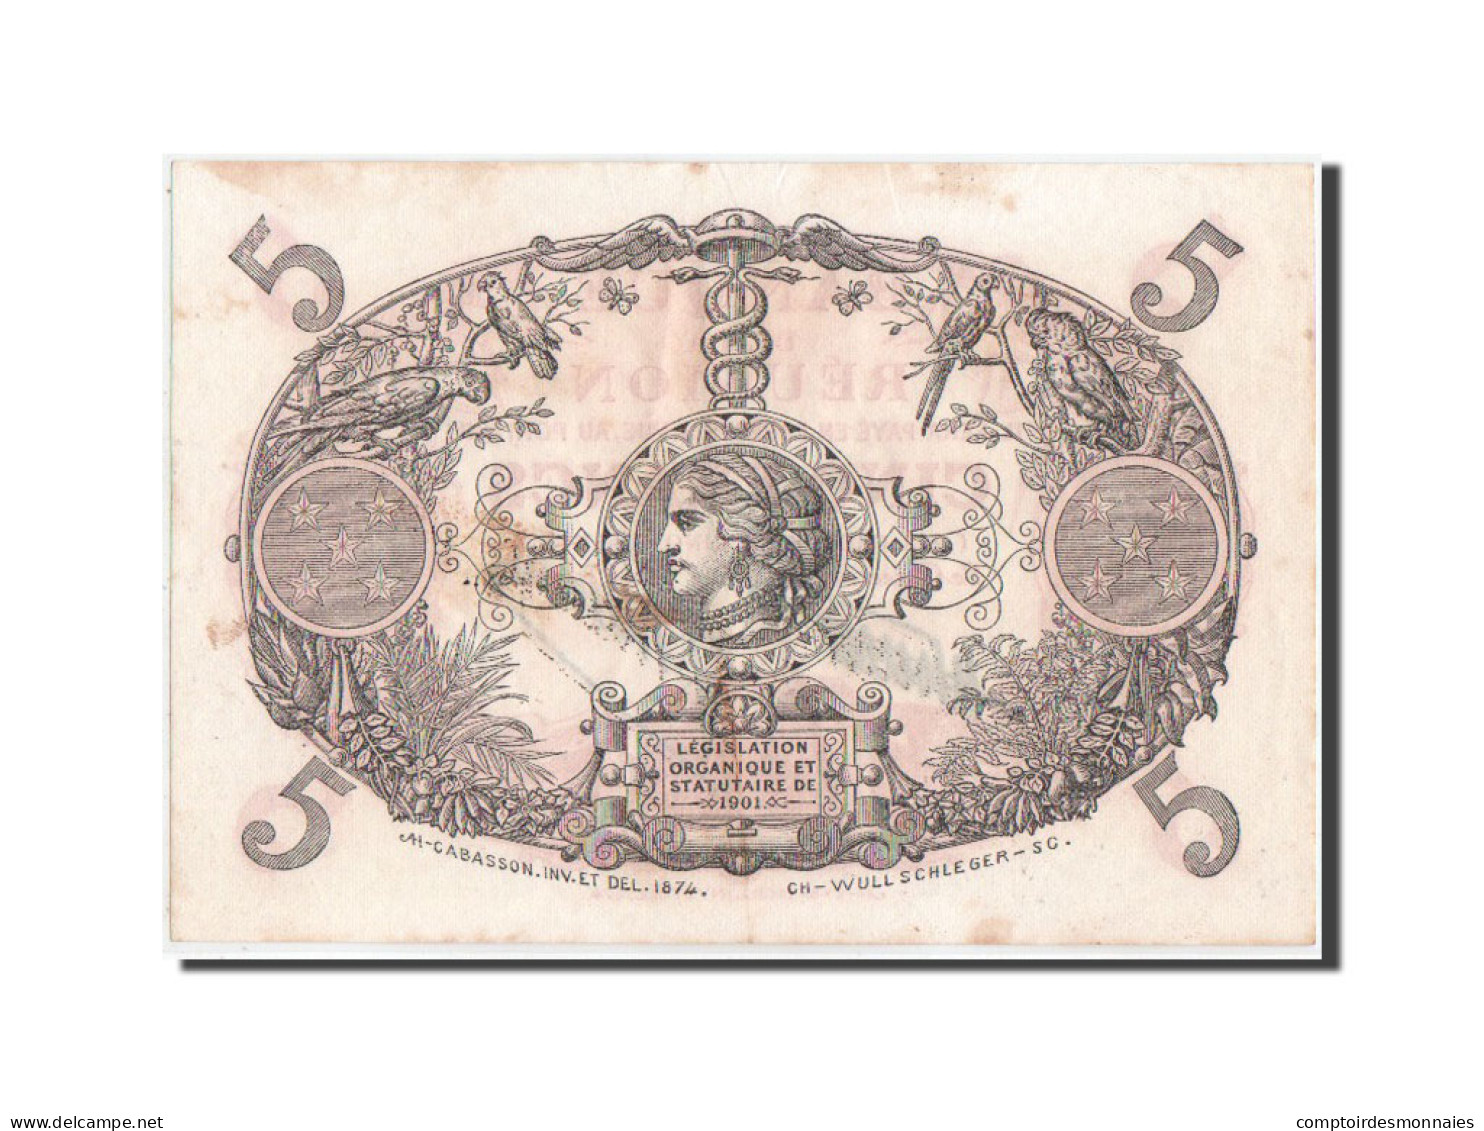 Billet, Réunion, 5 Francs, 1938, KM:14, TTB+ - Reunion